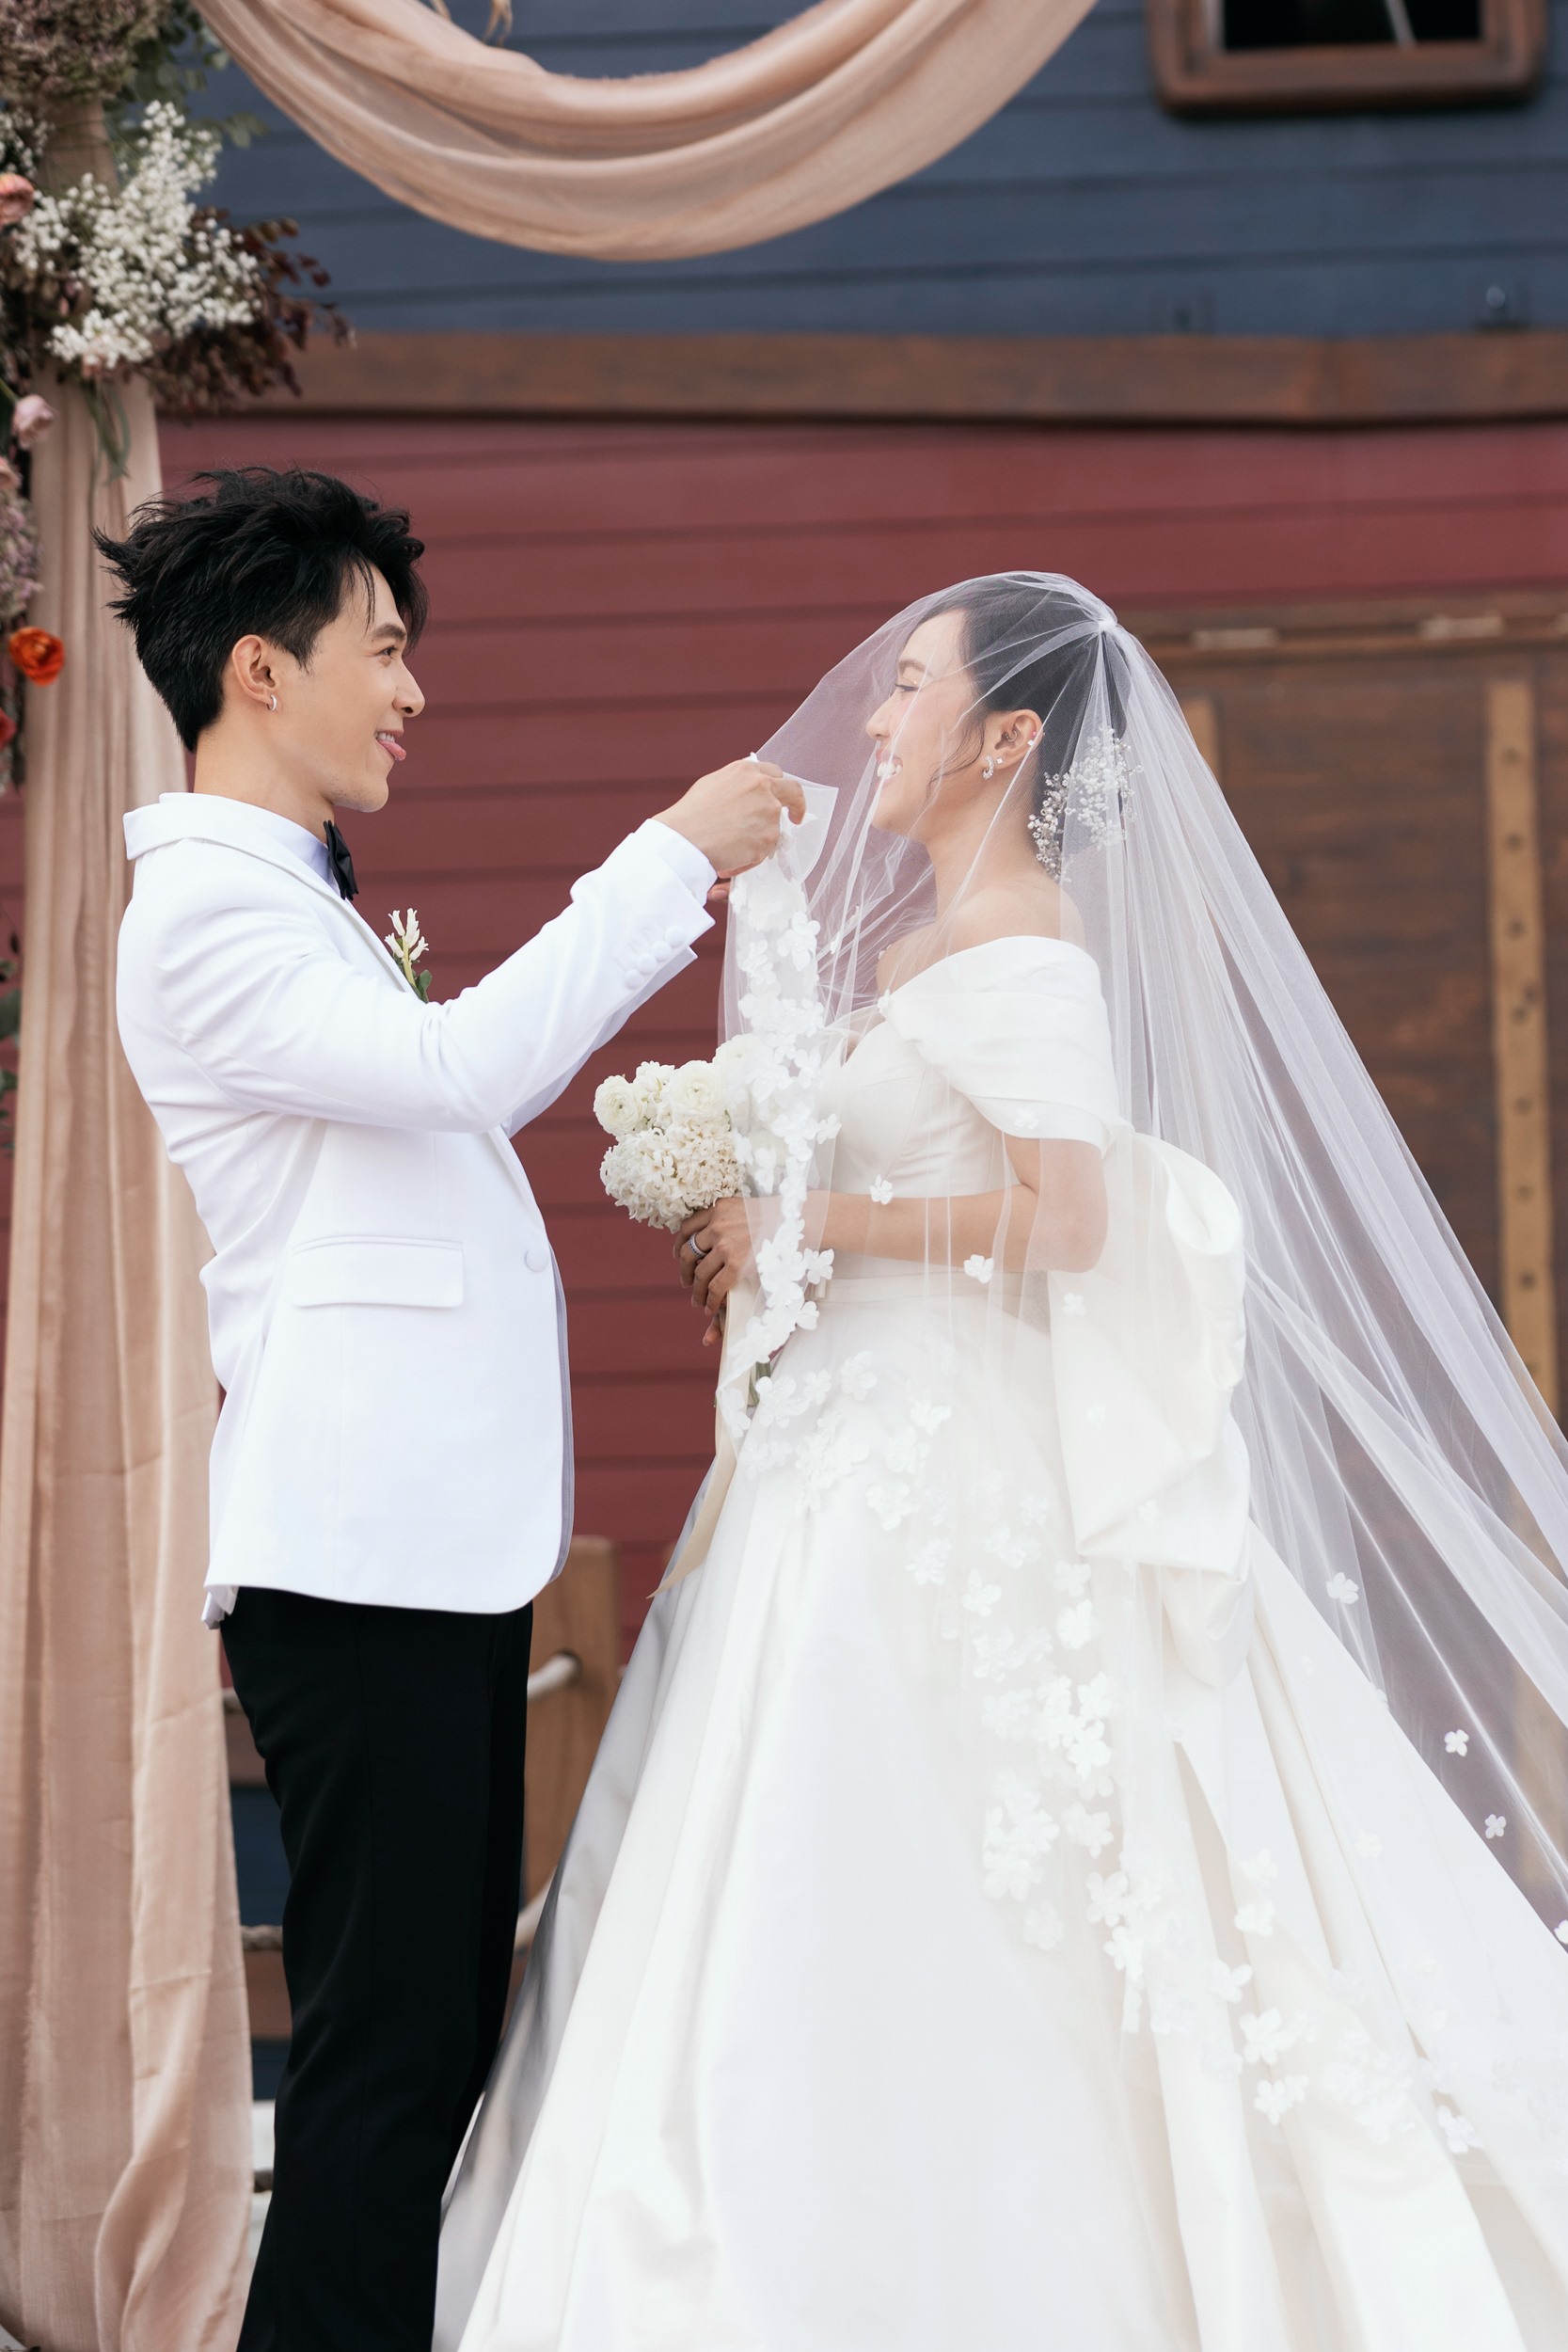 Diệu Nhi và Anh Tú bật khóc trong đám cưới, Trấn Thành dành lời chúc phúc